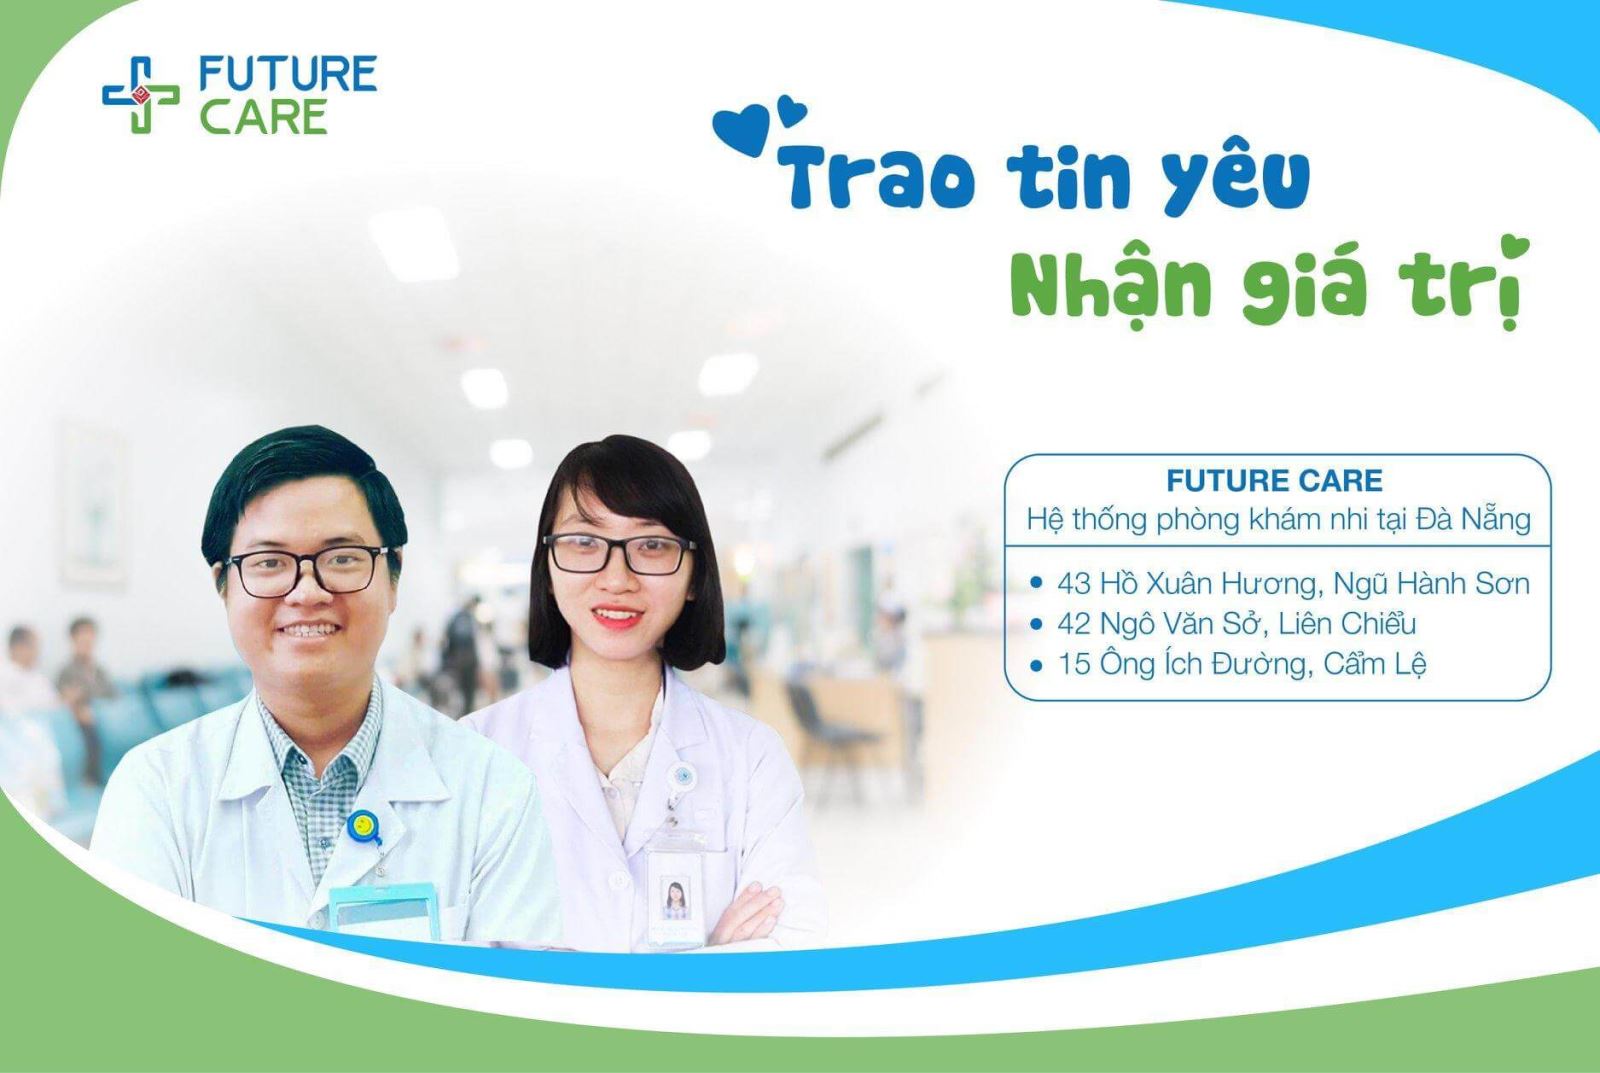 Phòng Khám Nhi Future Care Đà Nẵng